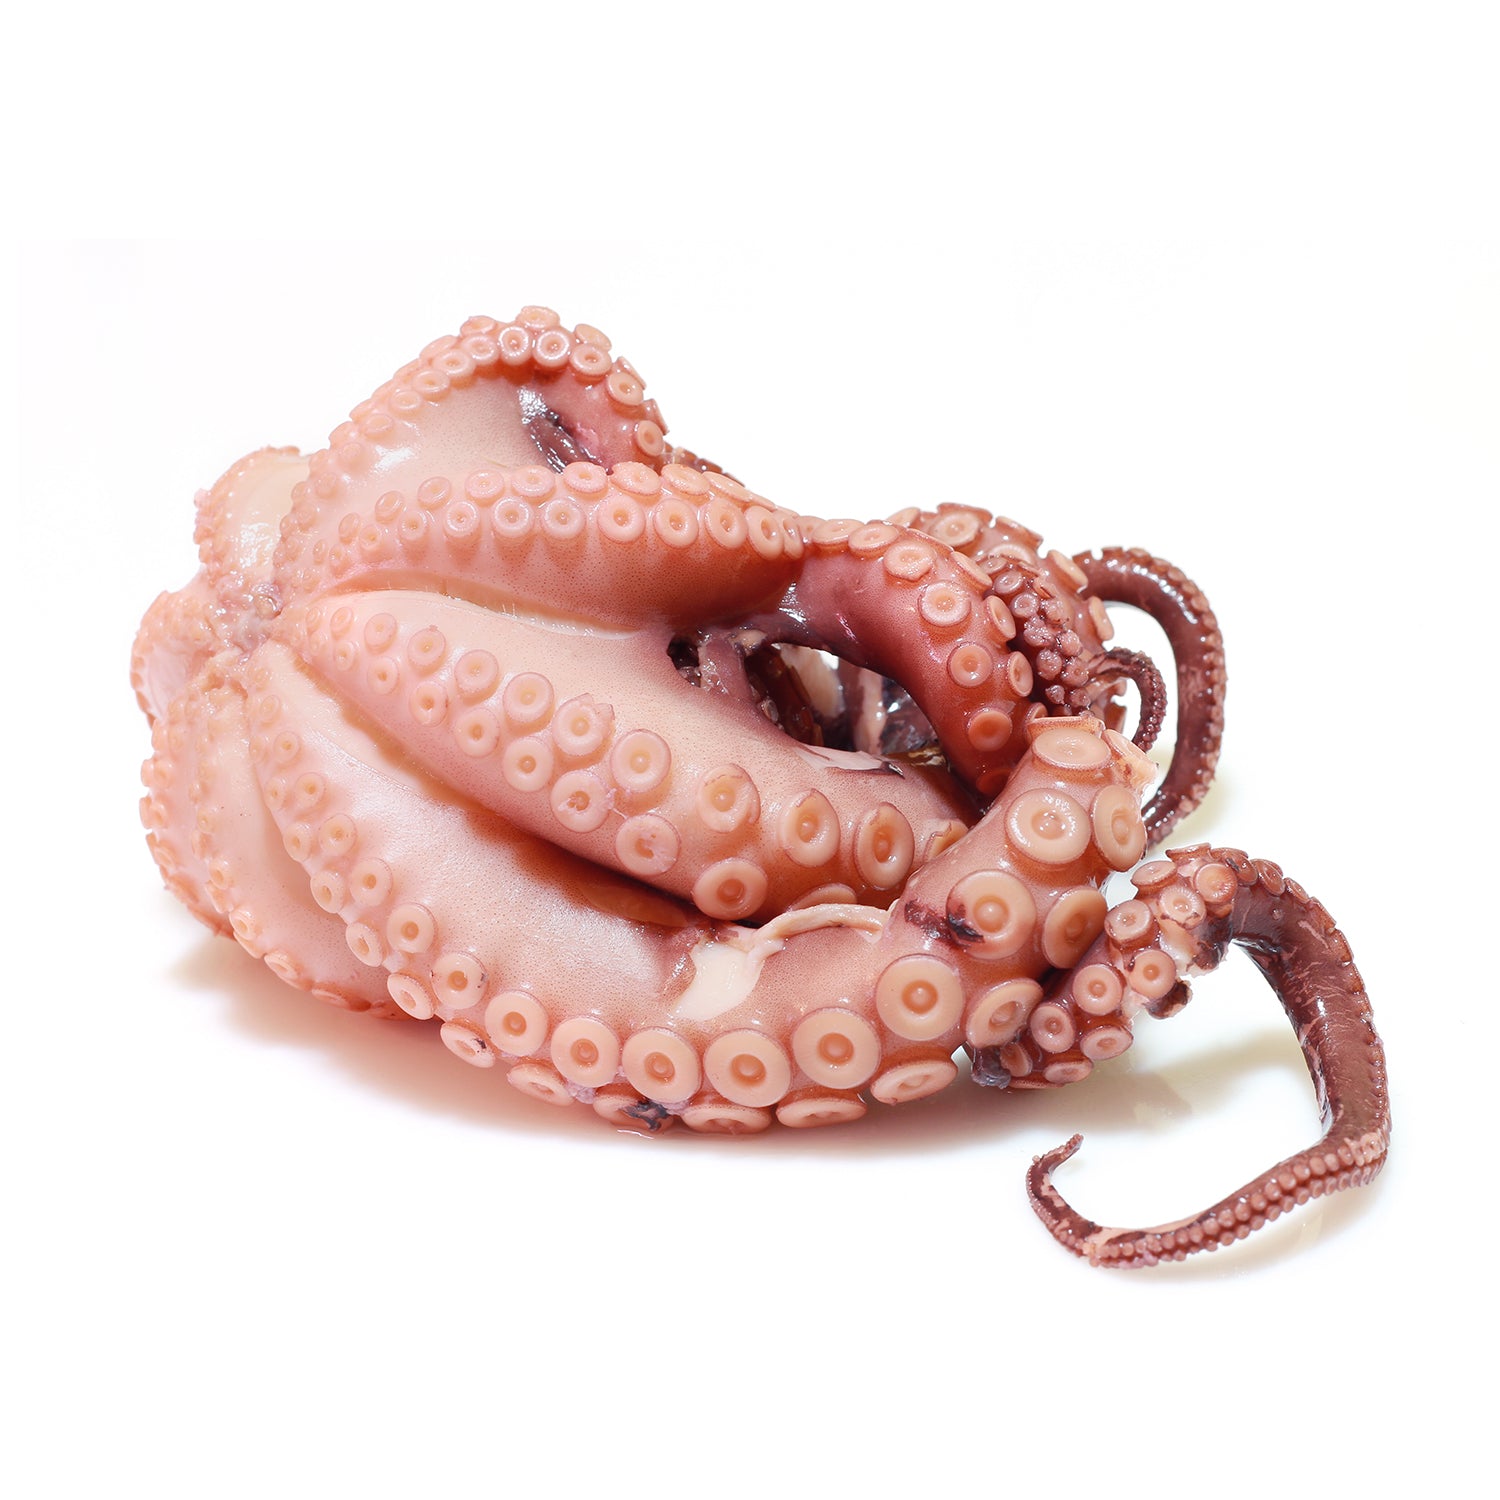 Wild Octopus - اخطابوط حر